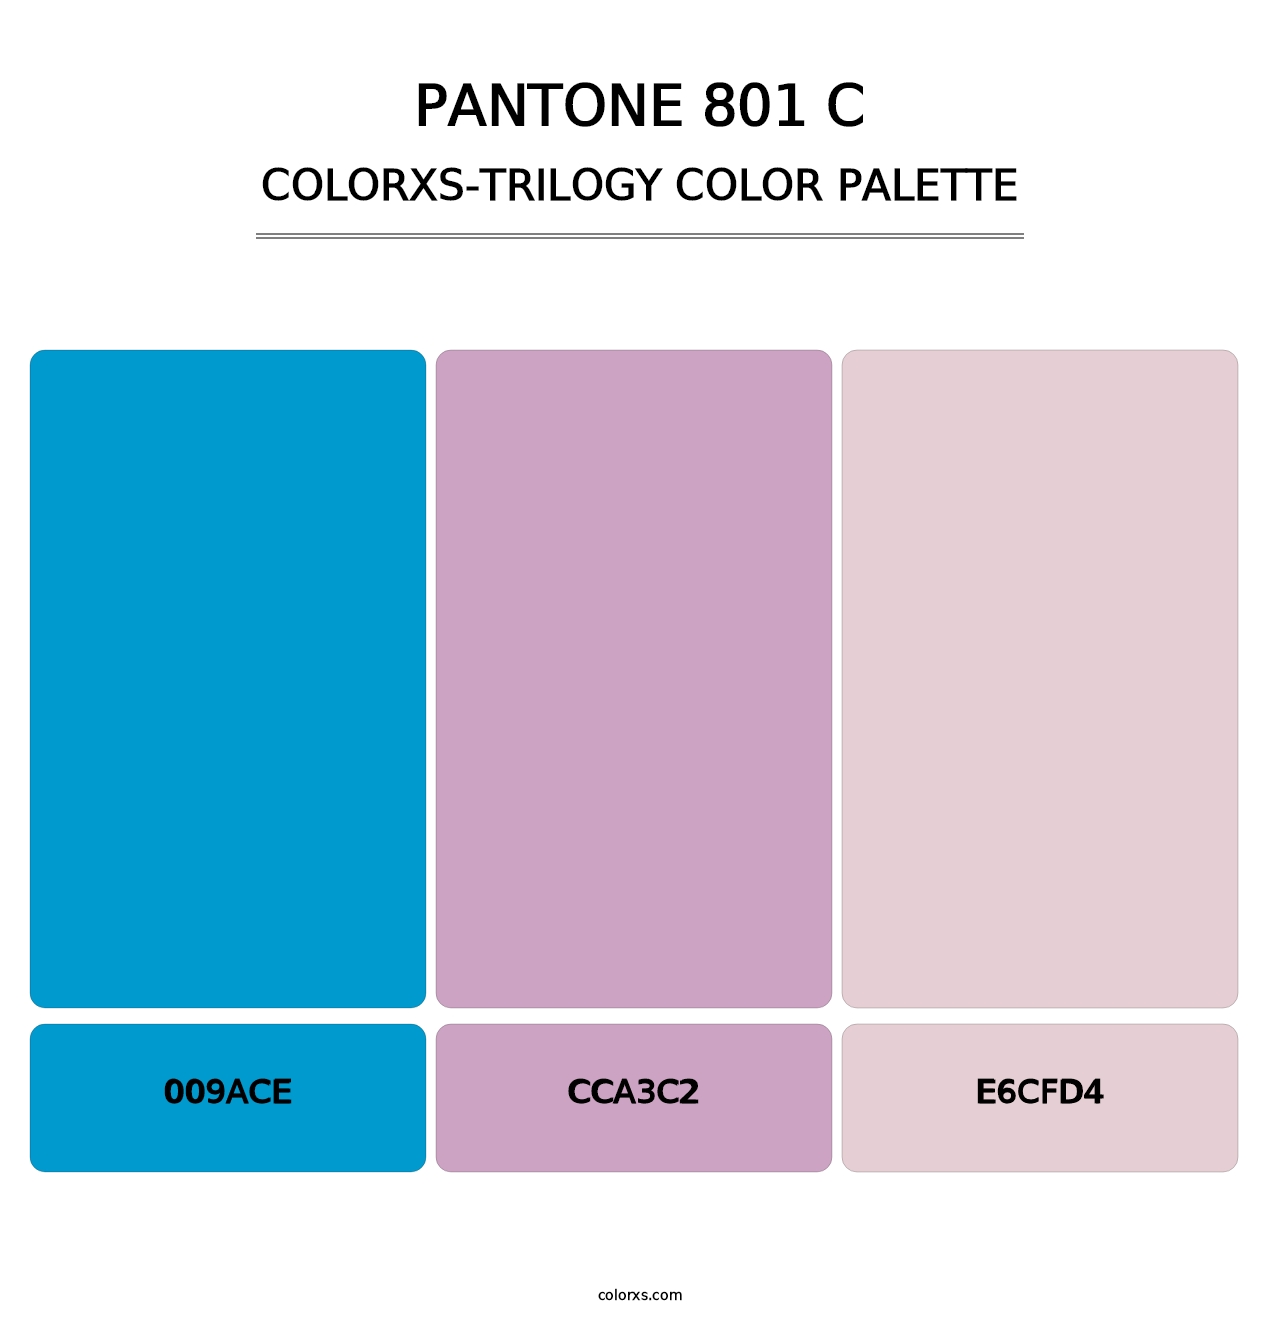 PANTONE 801 C - Colorxs Trilogy Palette